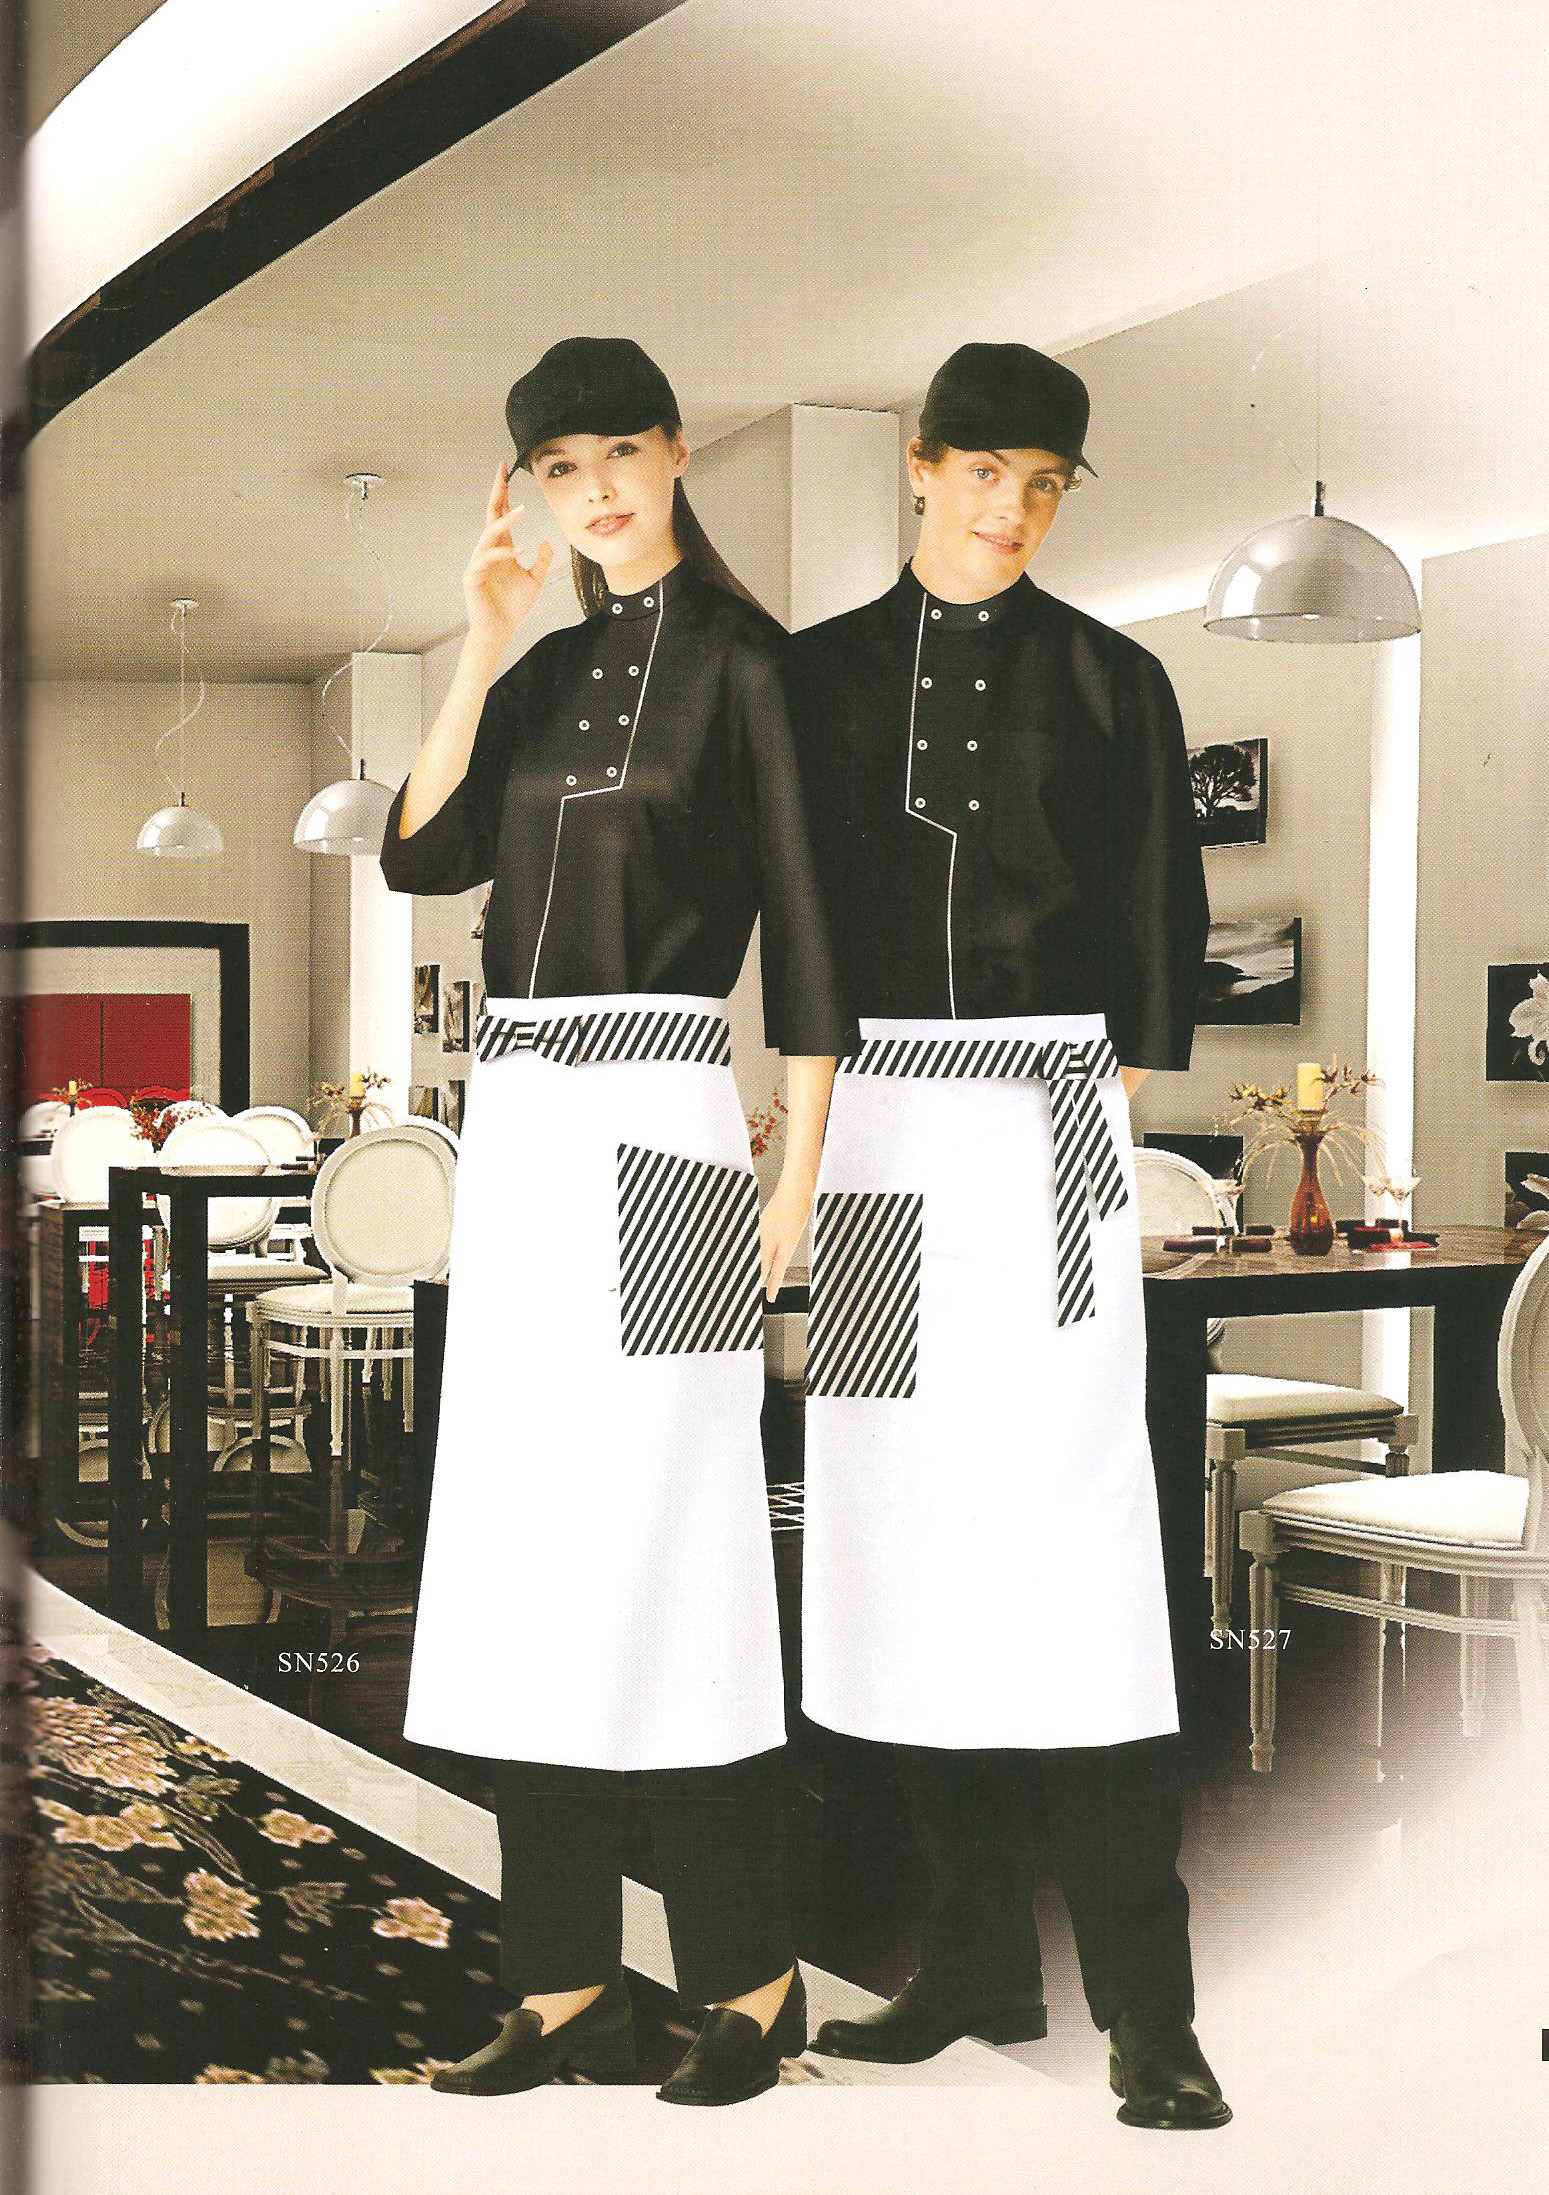 尺子剪刀布定制新款韩式餐厅制服 韩式小店服务员制服